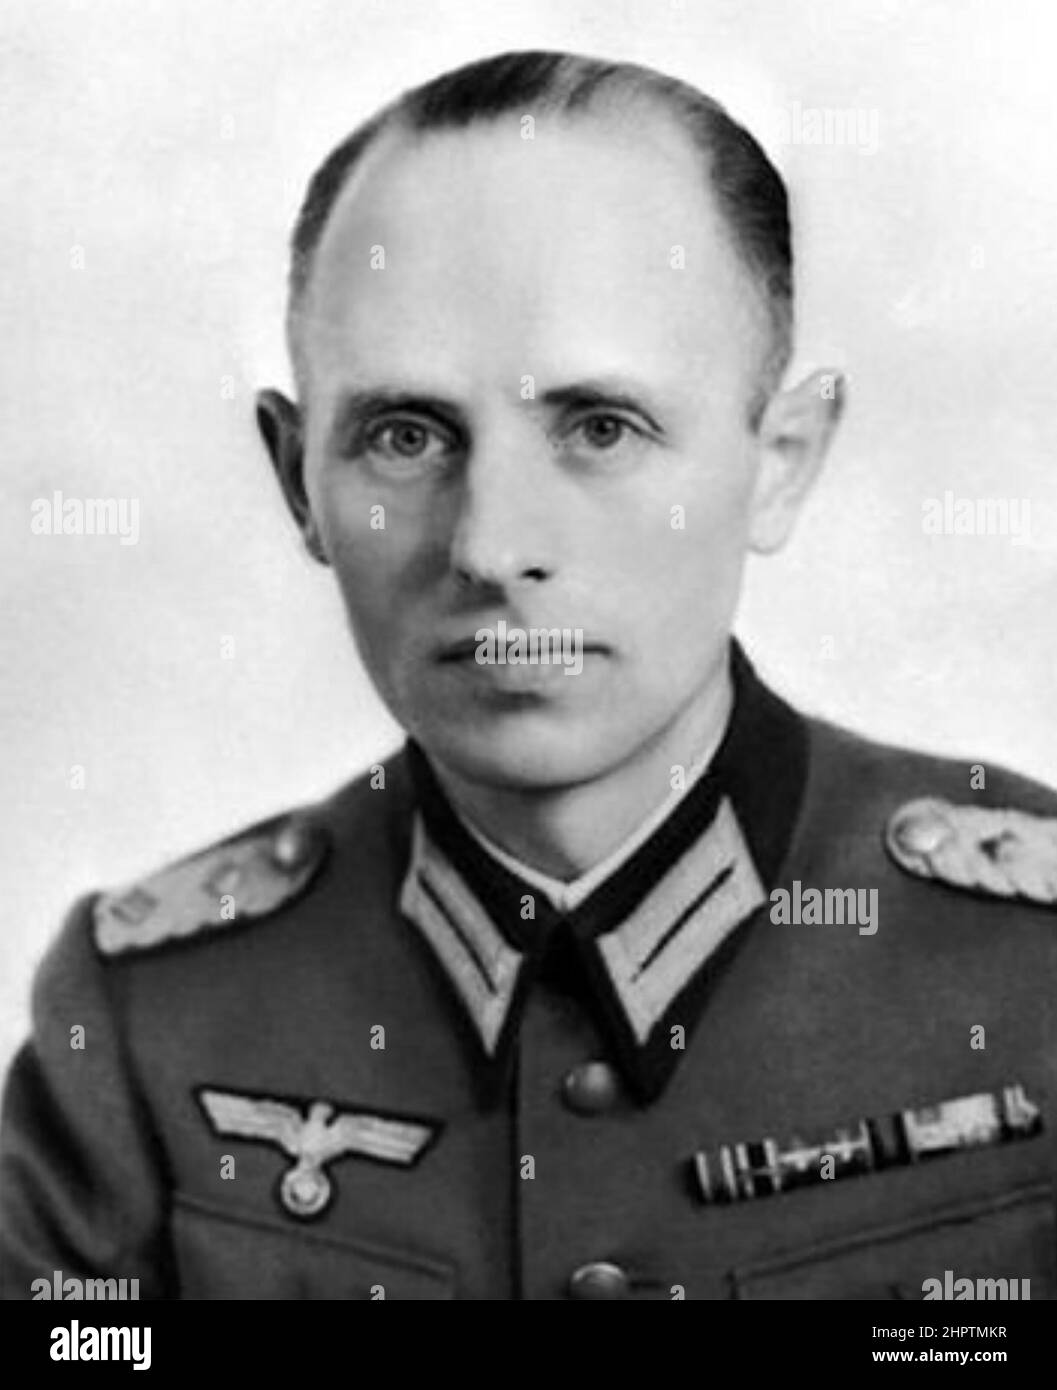 REINHARD GEHLEN (1902-1979) ufficiale di intelligence nazista Wehrmacht che in seguito lavorò con la CIA e i servizi di intelligence federali tedeschi. Foto Stock